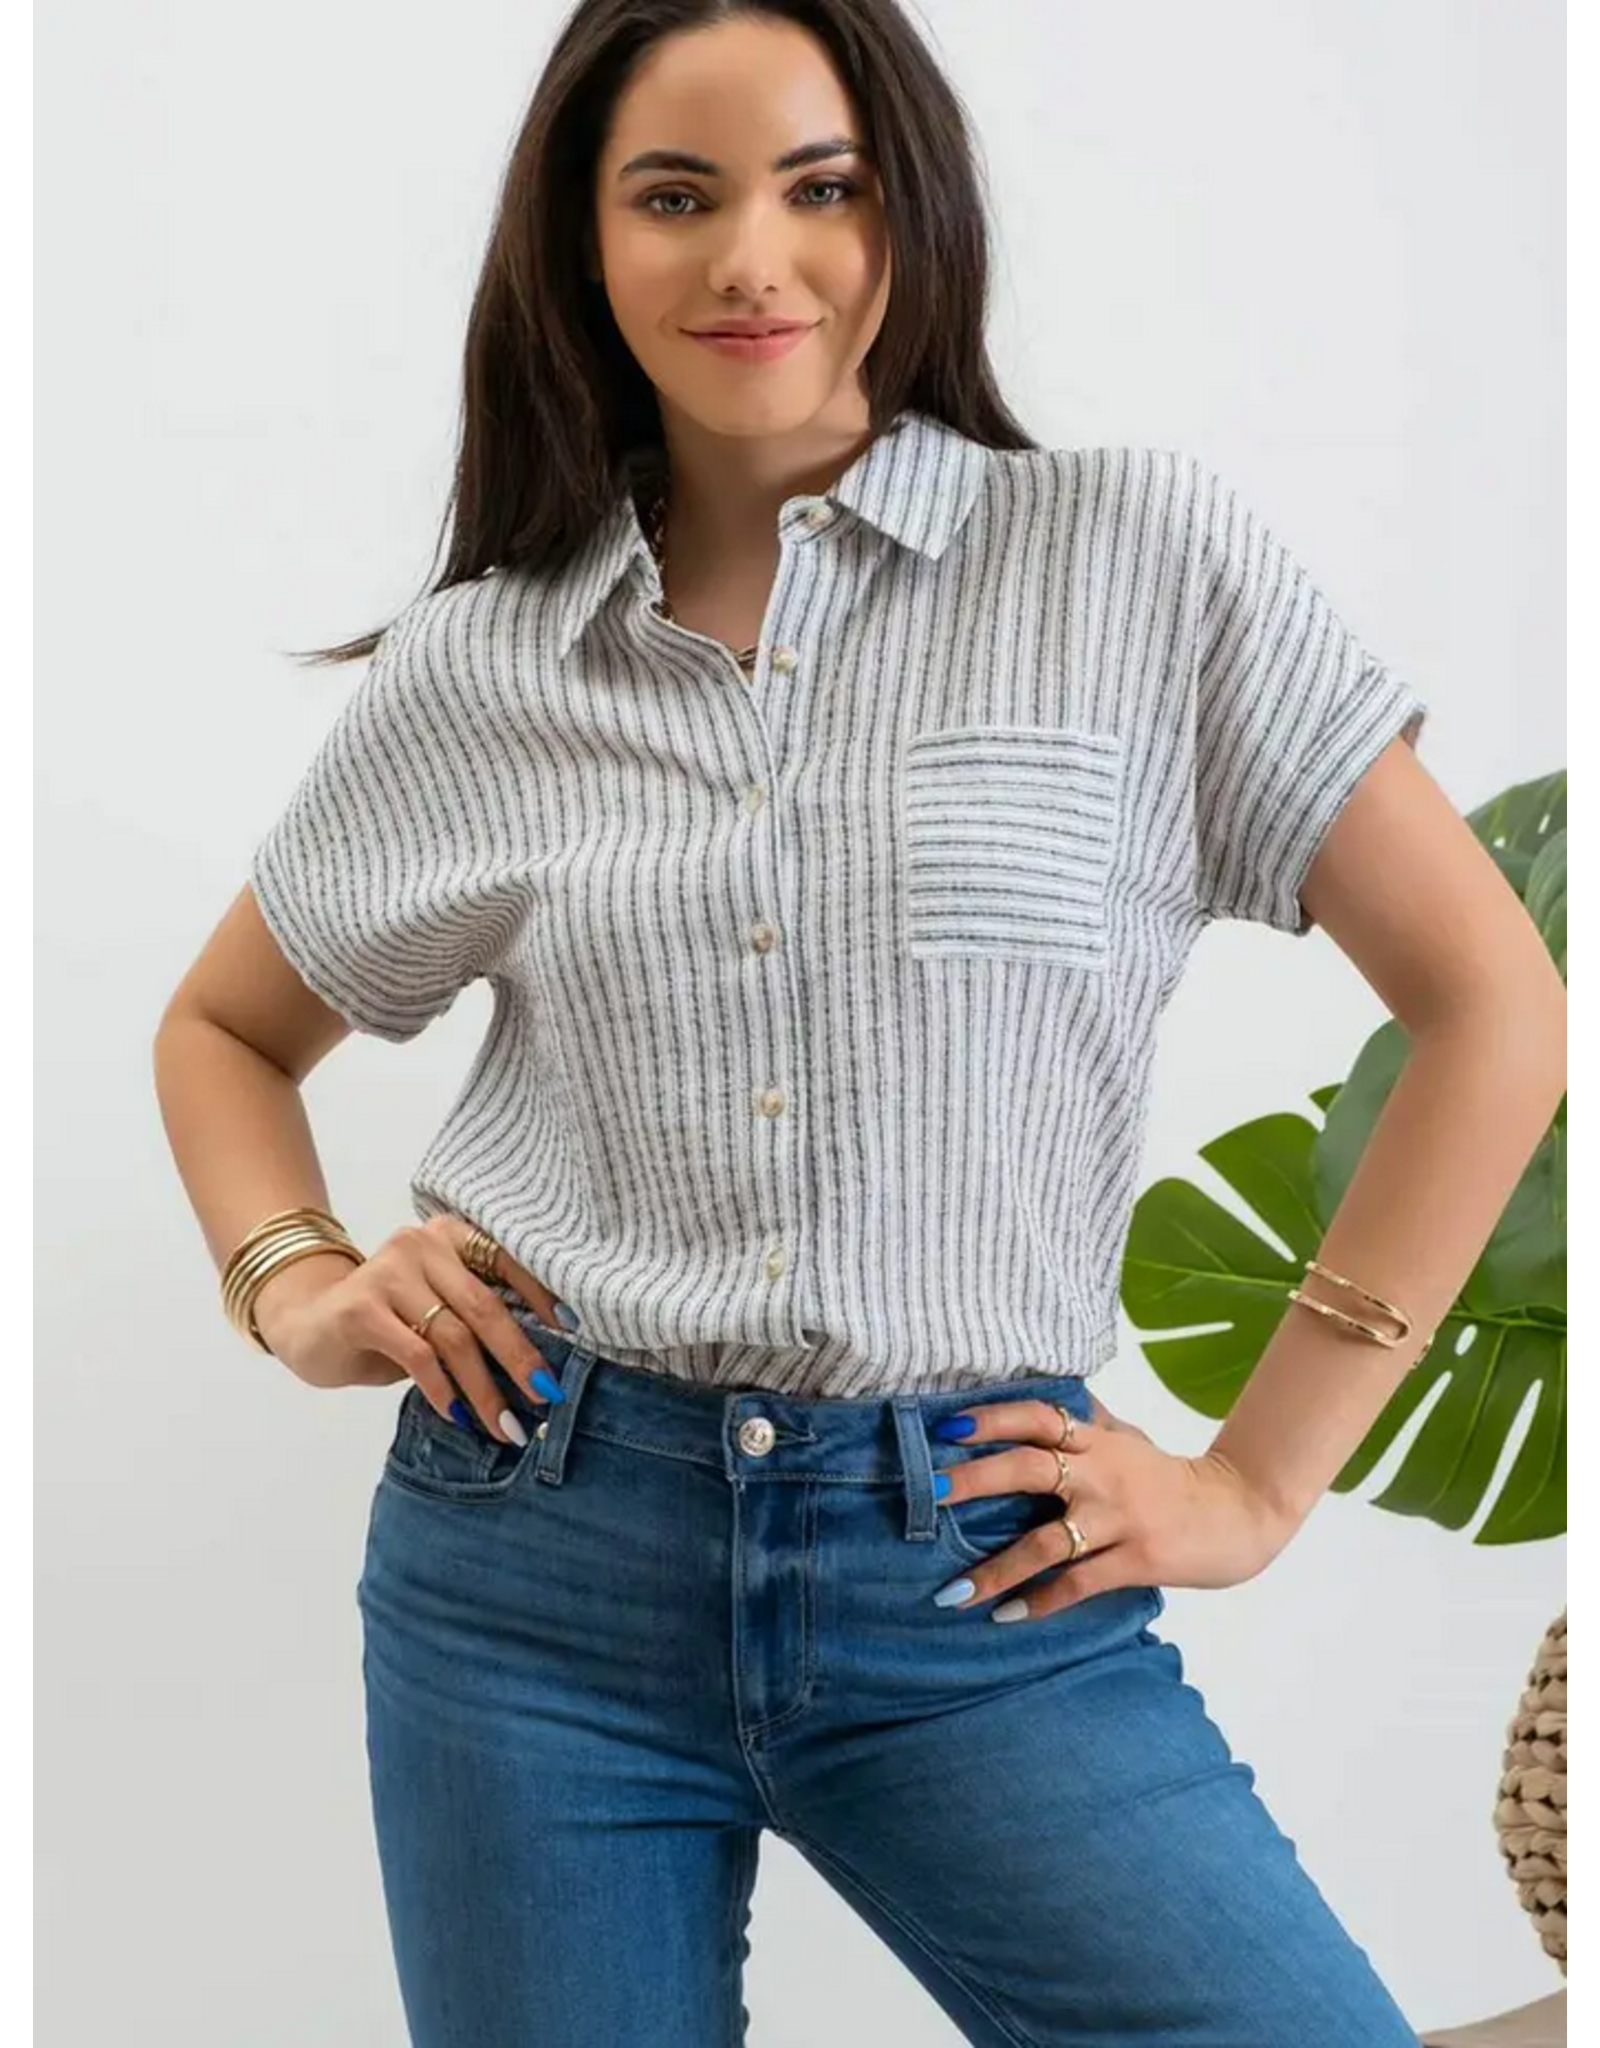 Blu Pepper Short Sleeve Striped Shirt